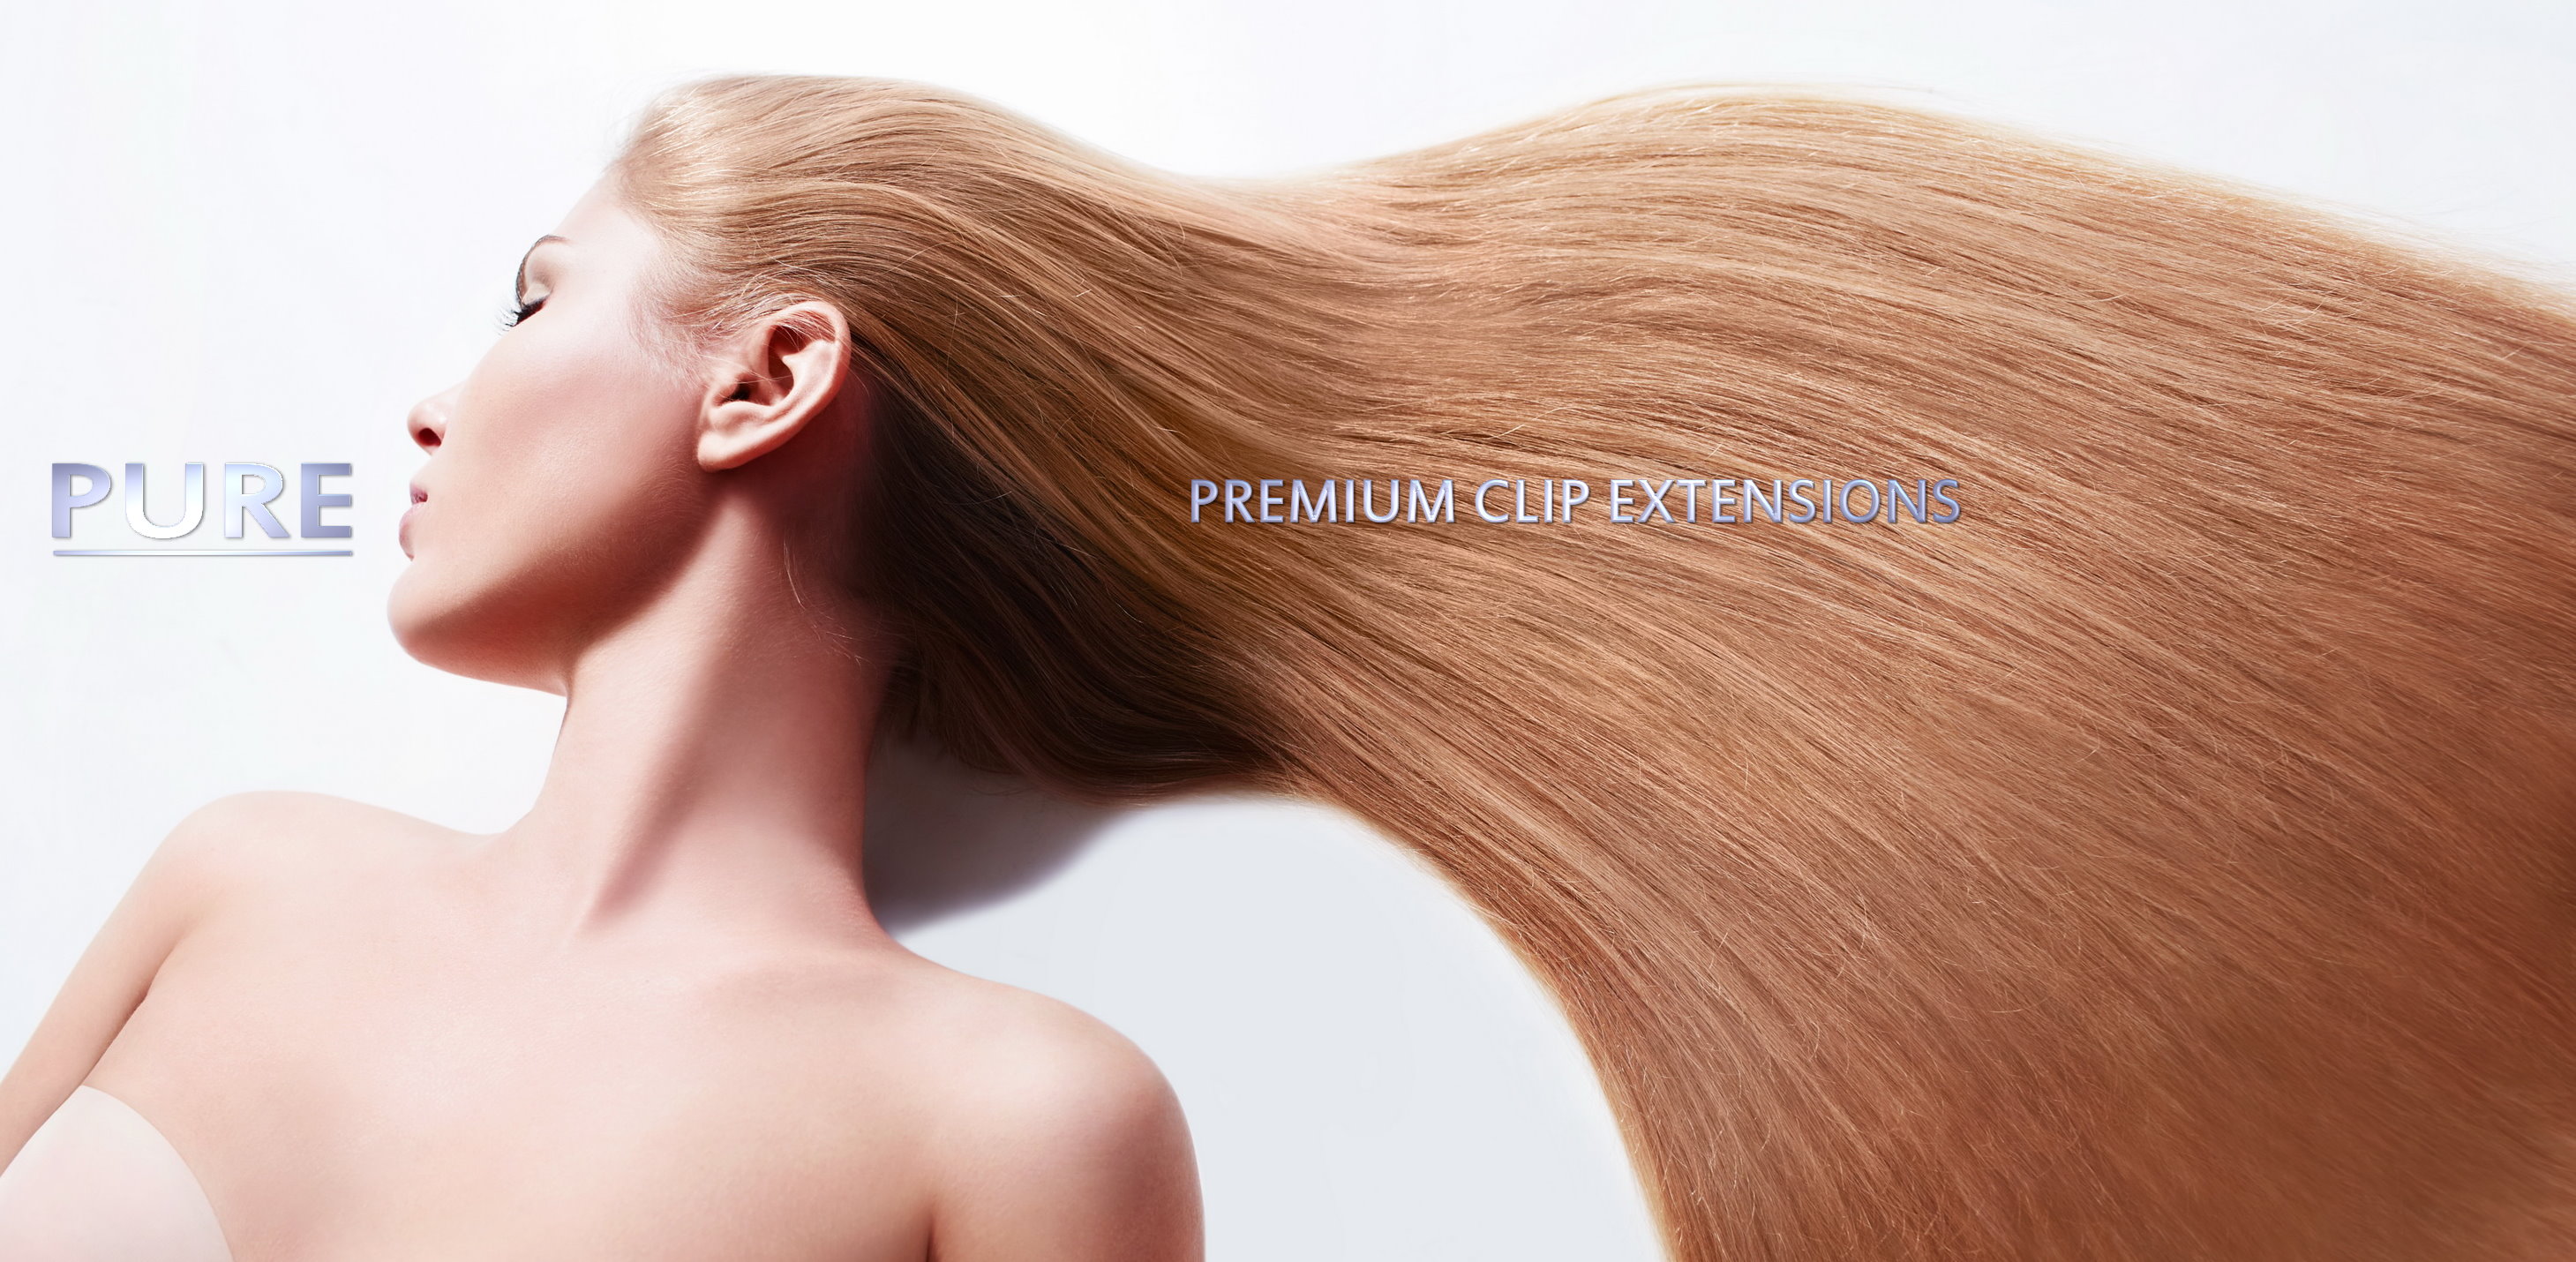 Premium-Clip-Extensions1